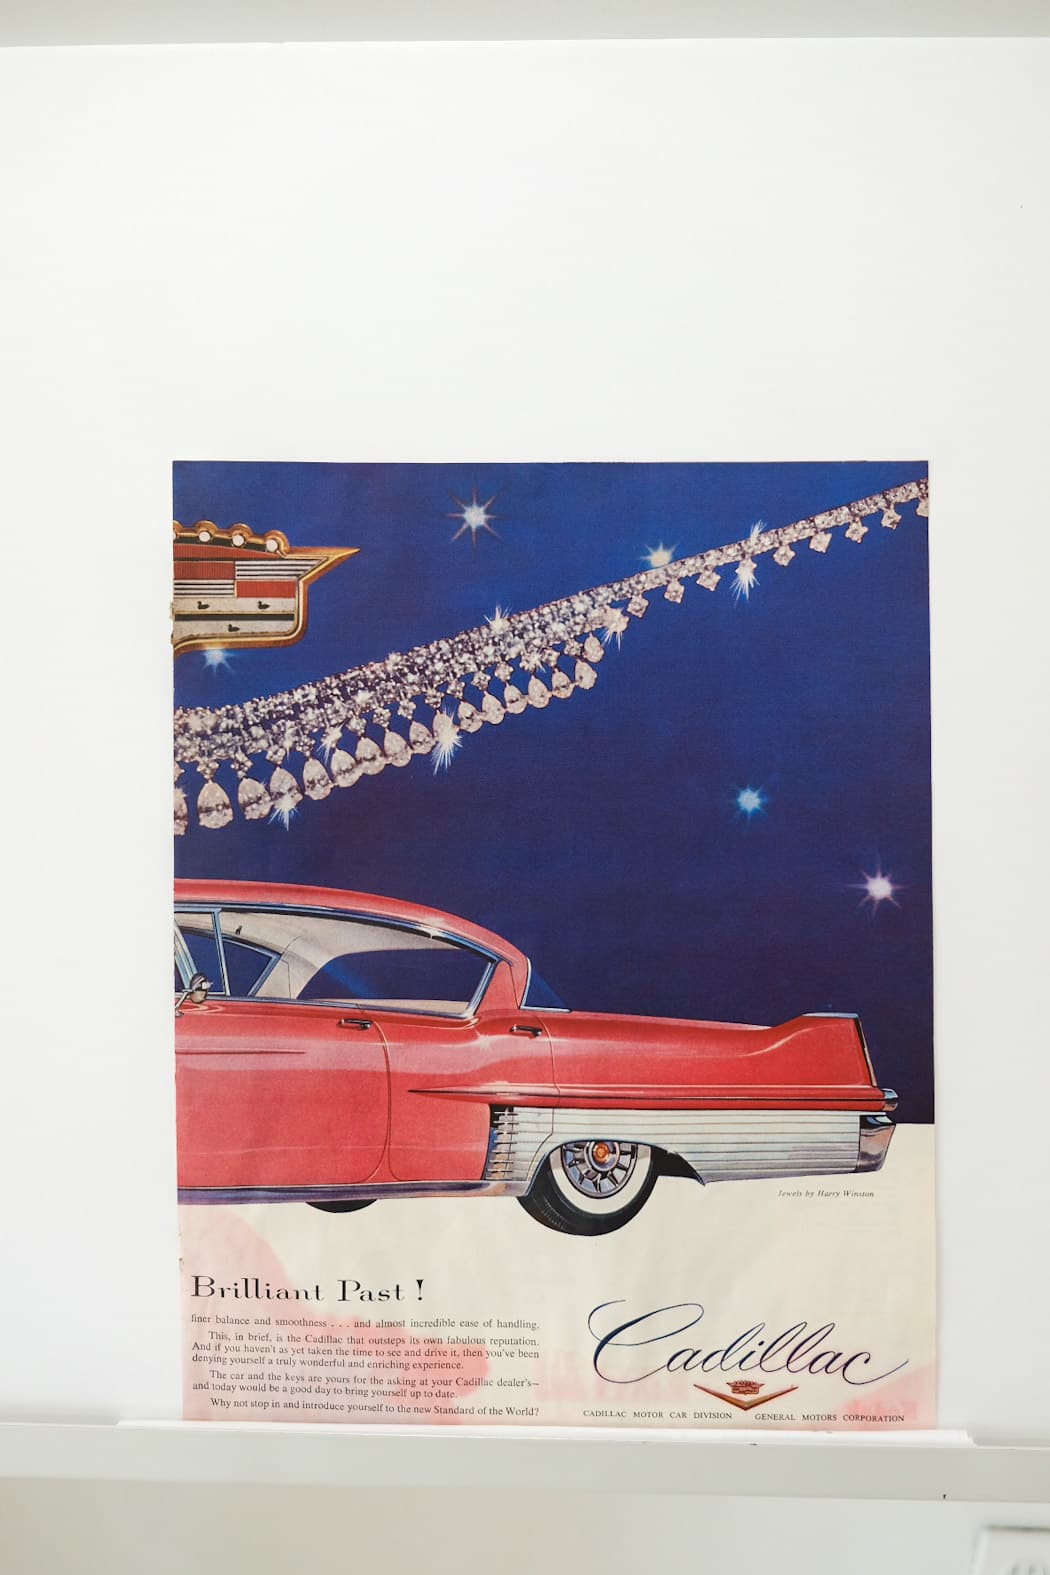 Cadillac Motor Car Division (B) Print Ad